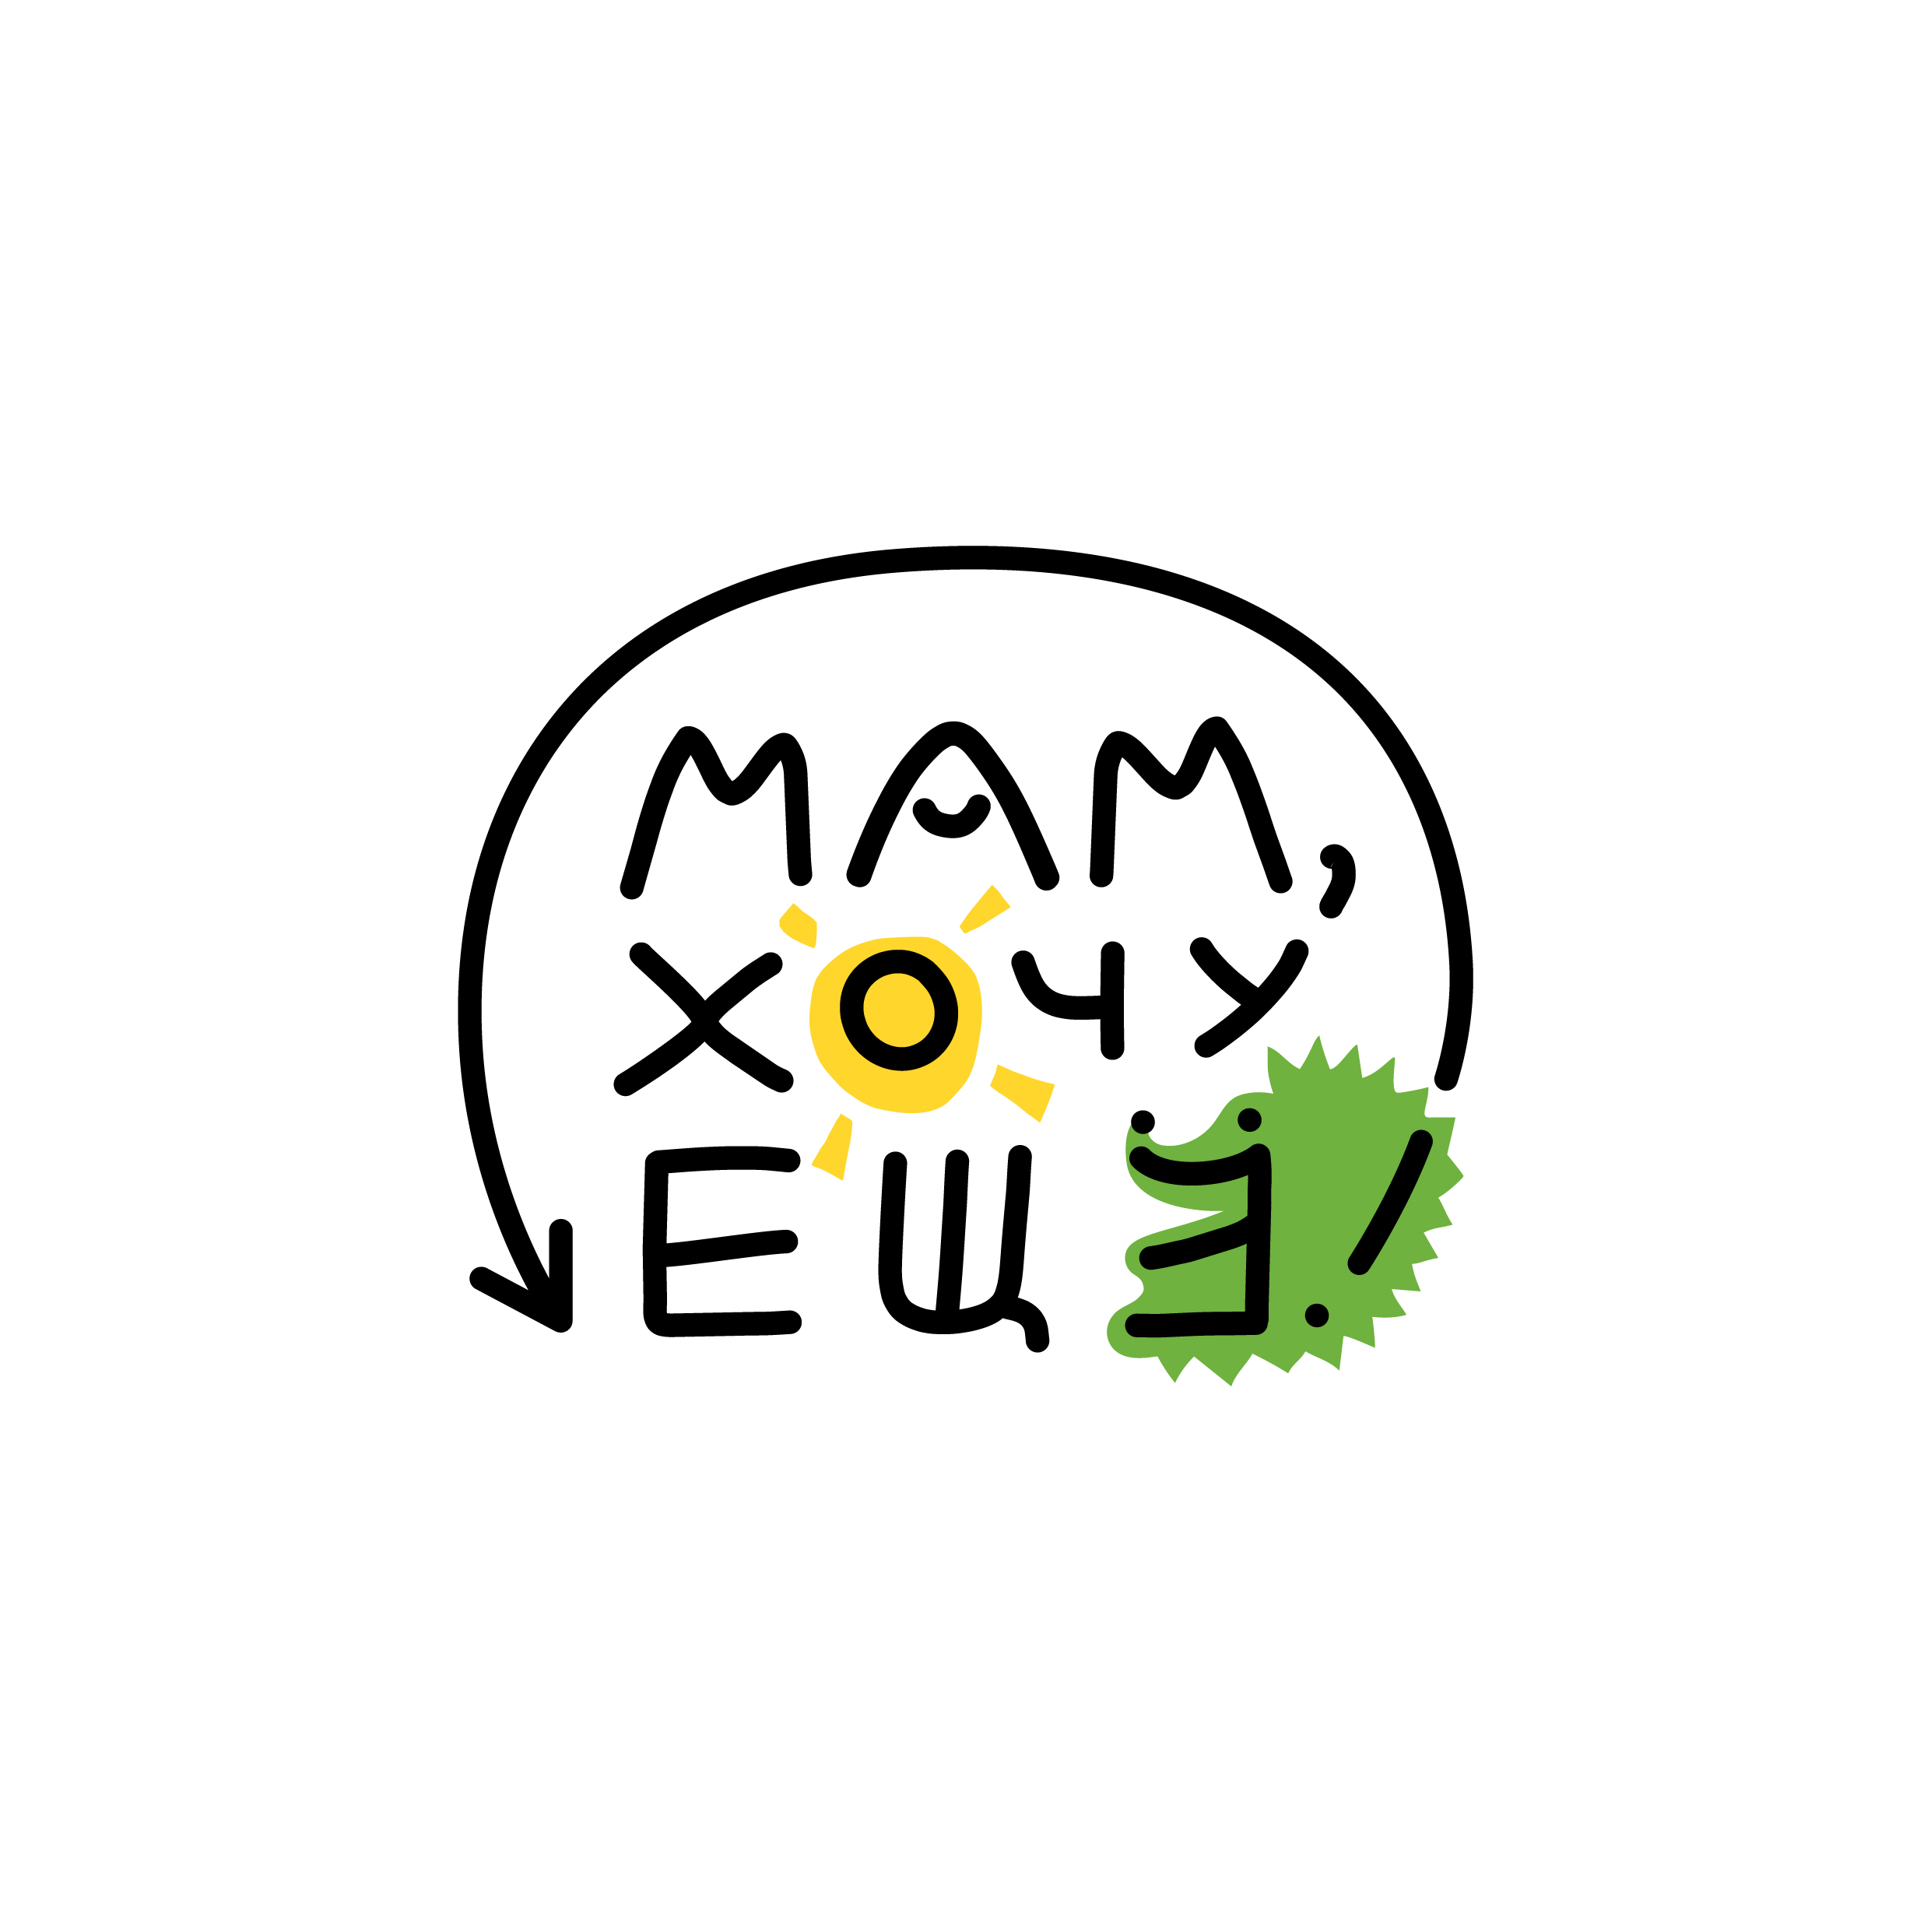 Лого: Мам, хочу ещё